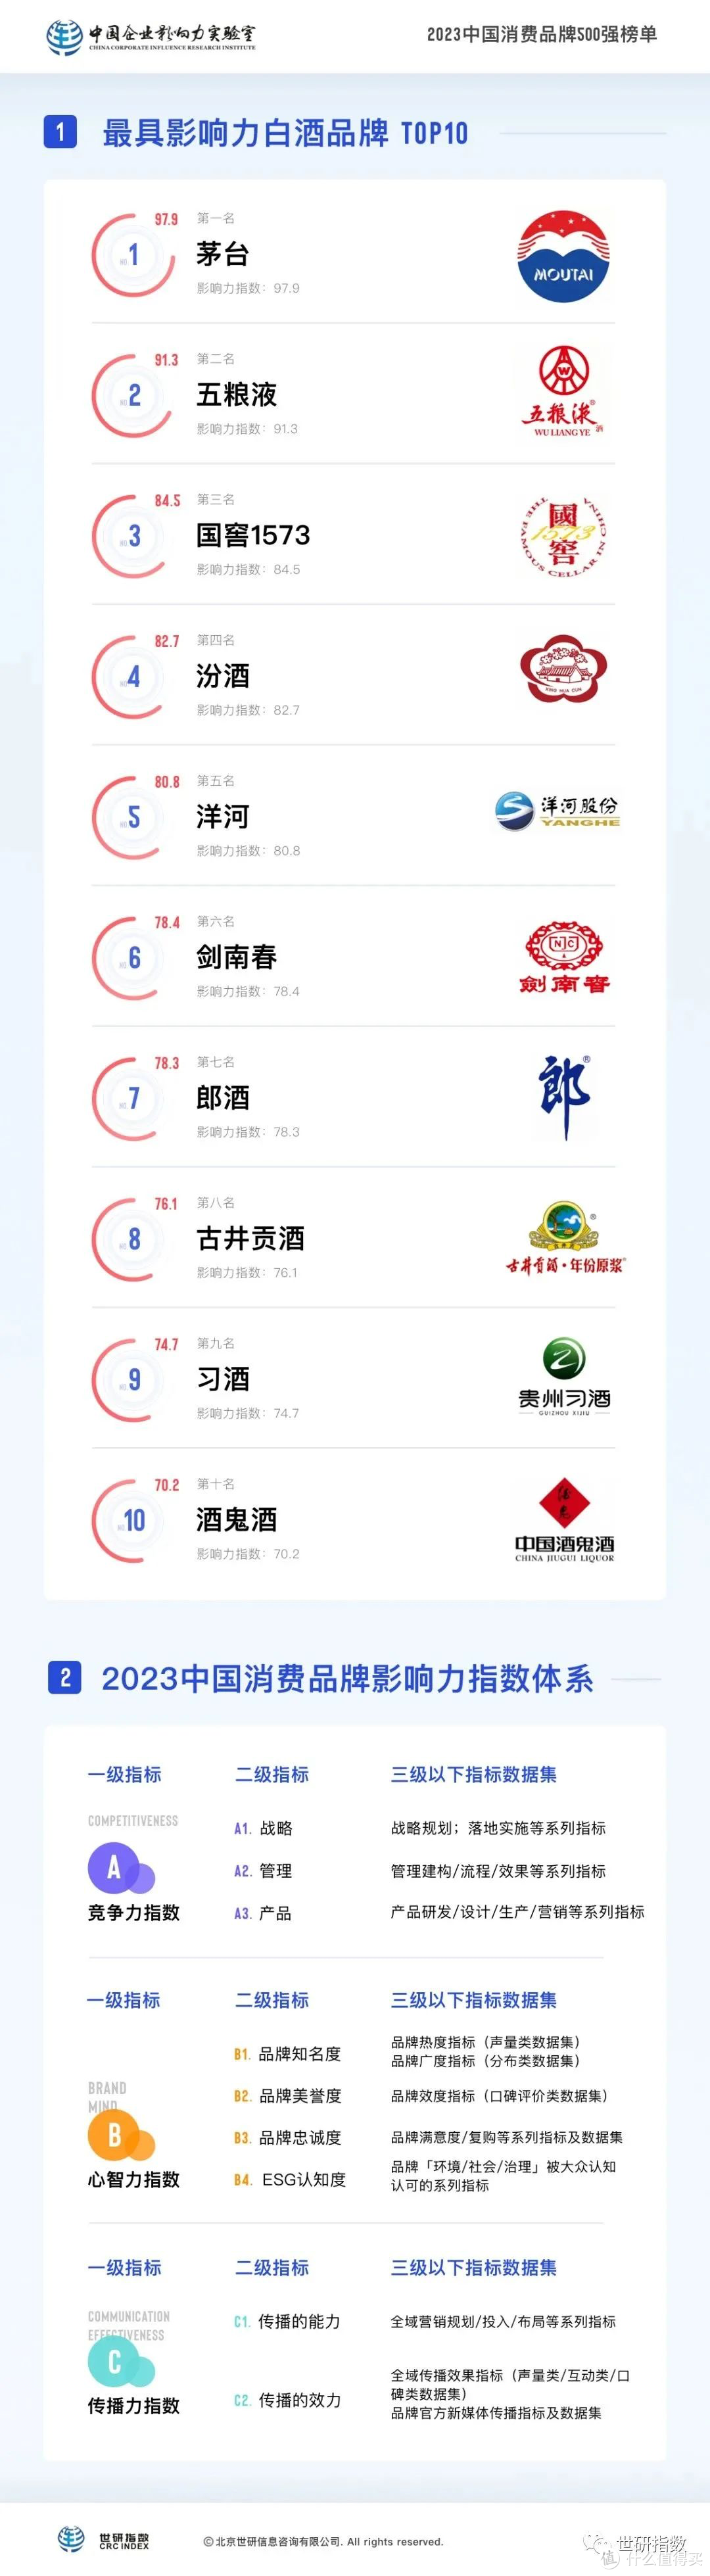 最具影响力白酒品牌TOP10【2023中国消费品牌500强系列榜单】